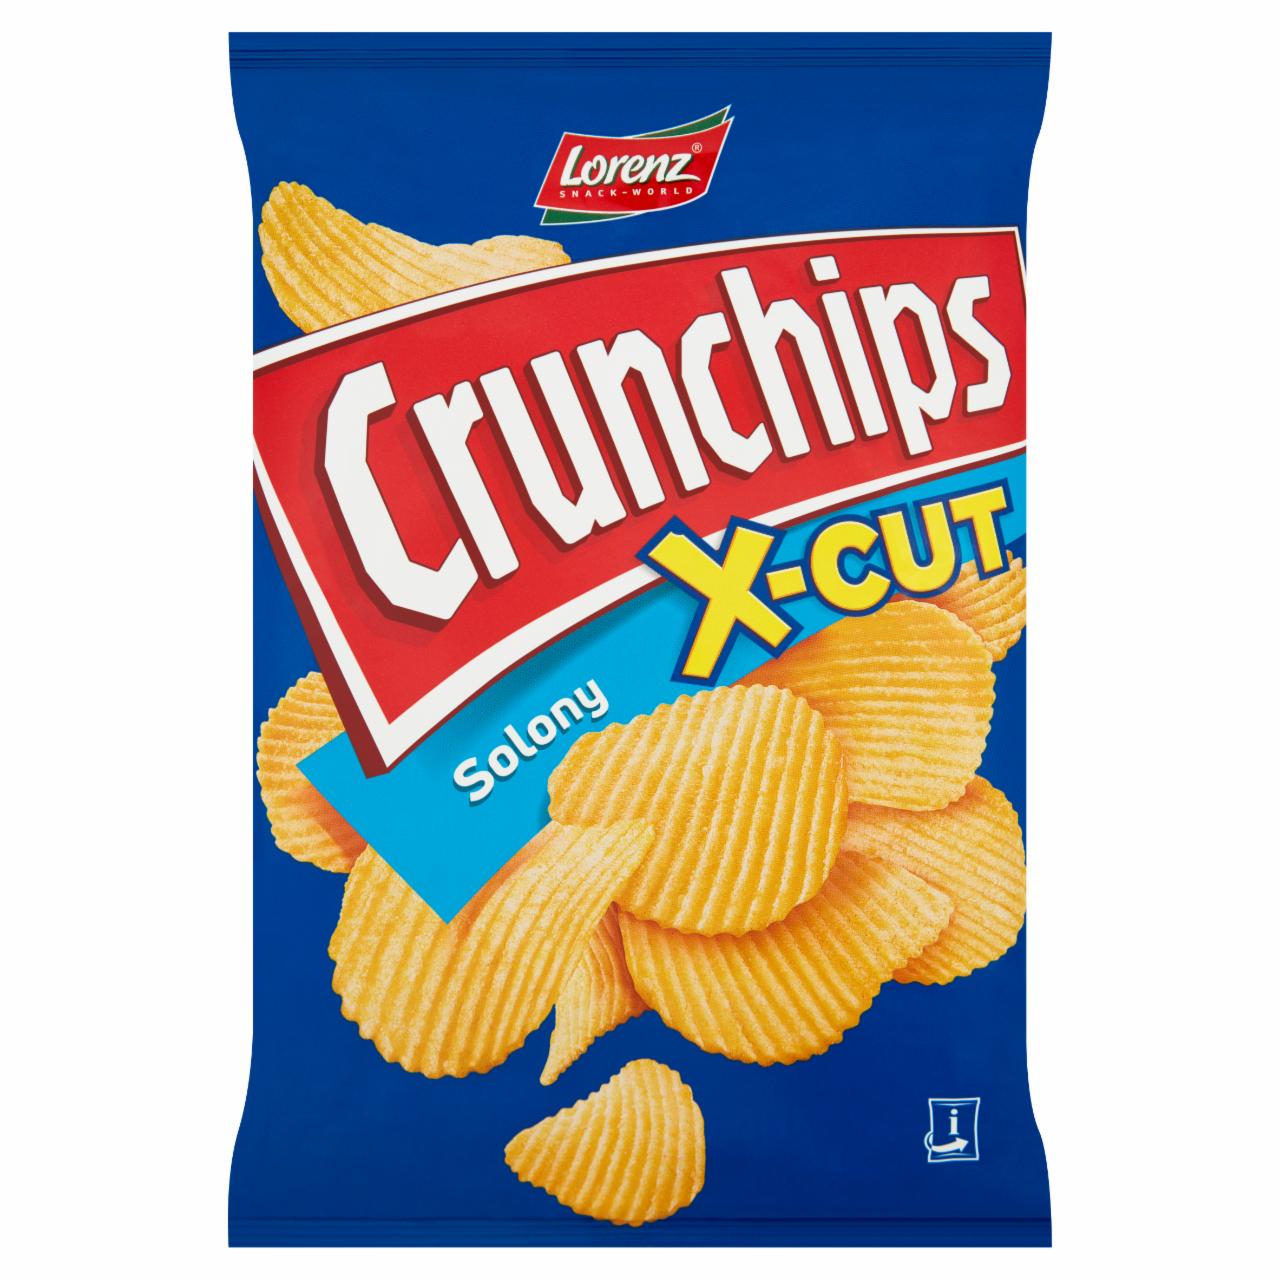 Фото - X-Cut Chipsy ziemniaczane solony Crunchips